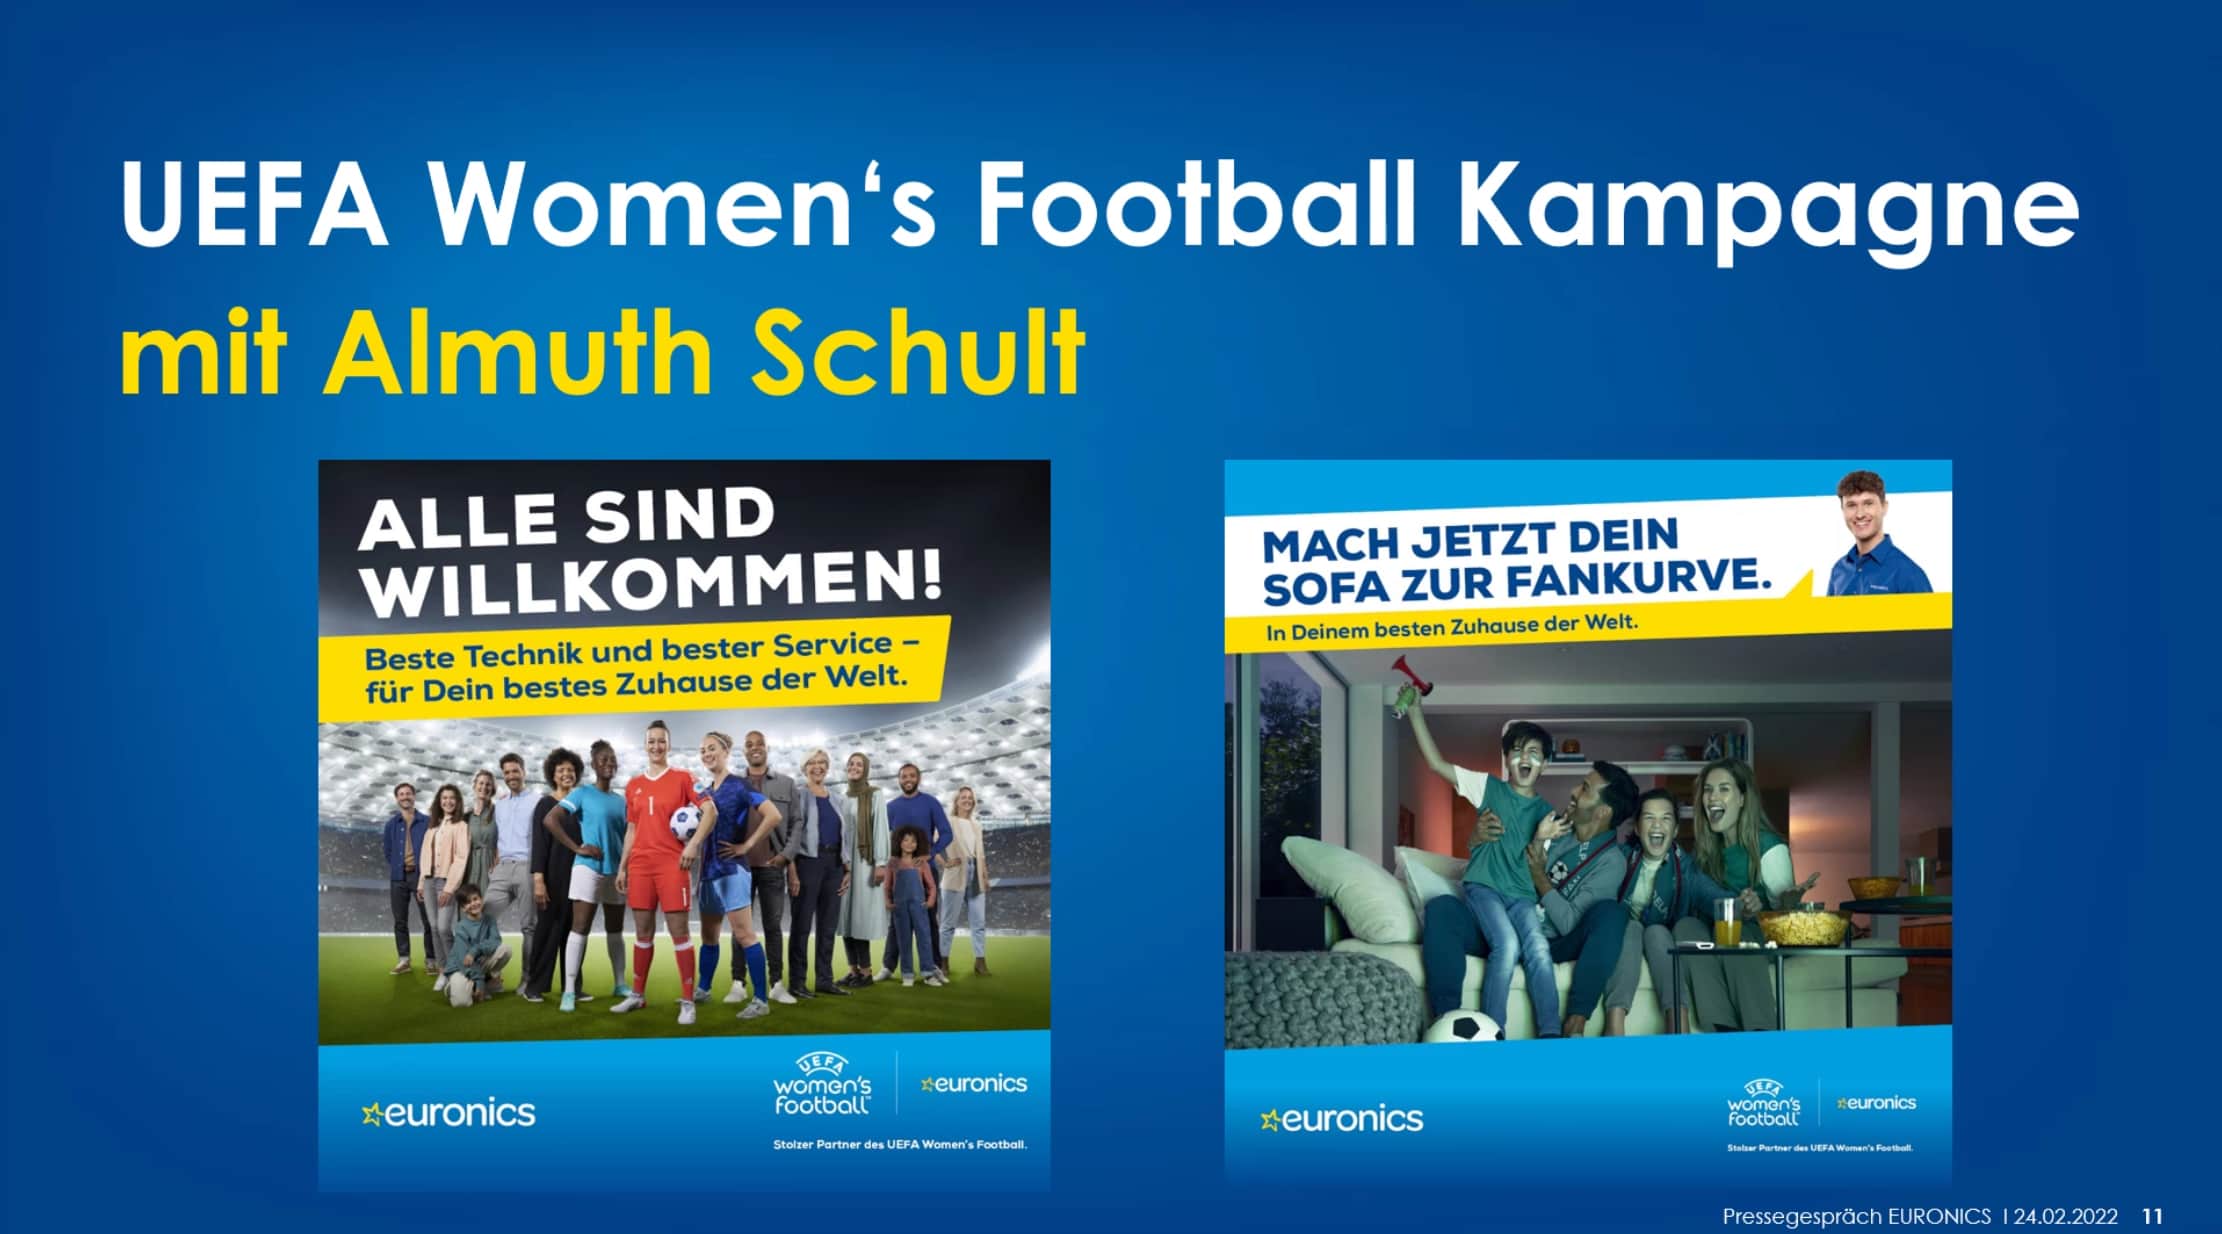 Die Euronics Group kooperiert mit der UEFA und fördert den Frauenfußball.